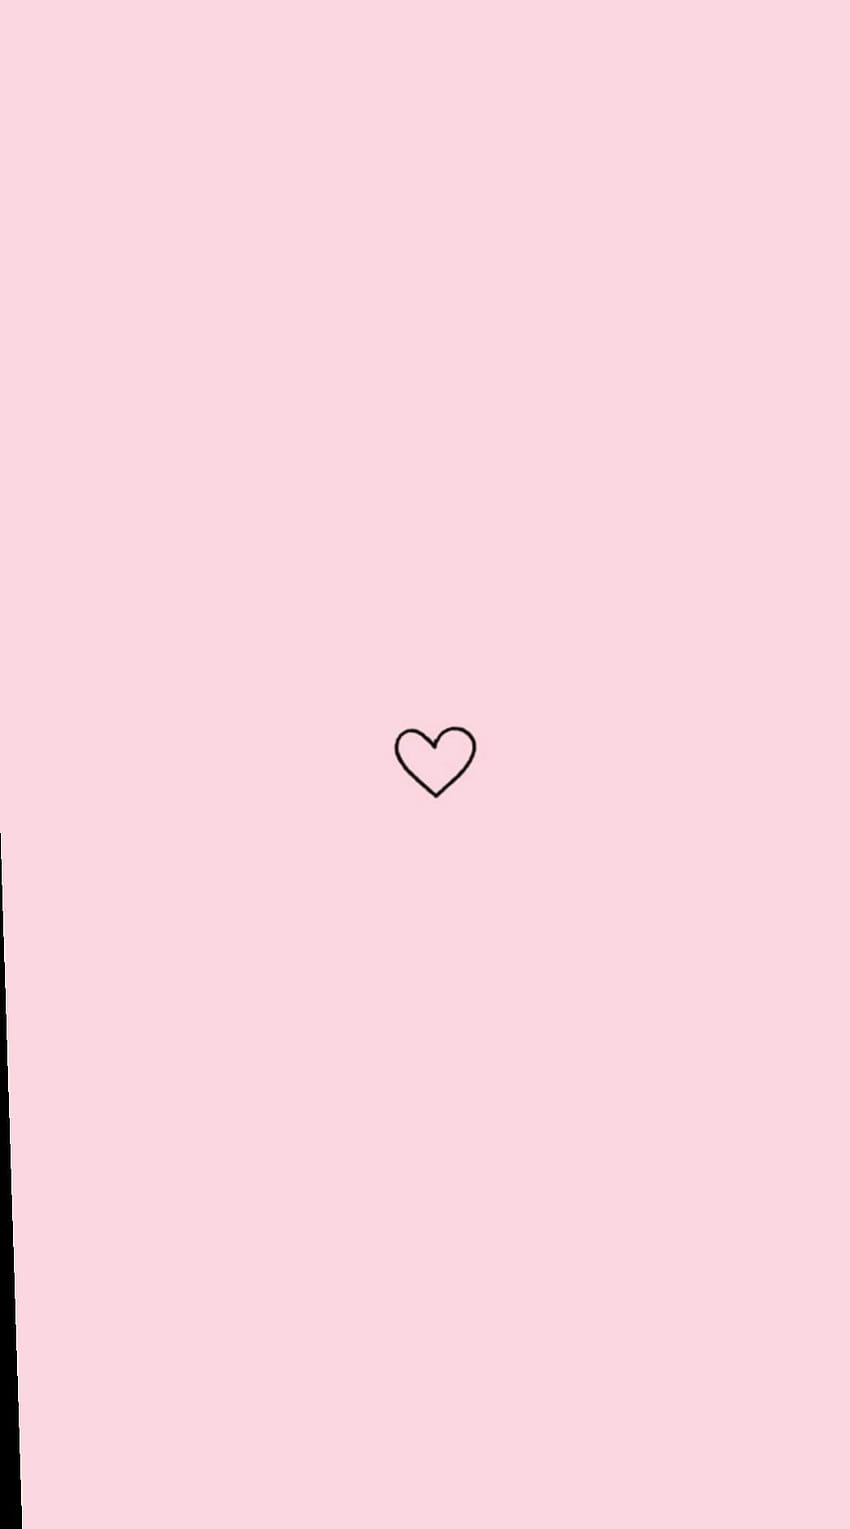 Hãy đắm mình trong thế giới của những trái tim màu hồng thẩm mỹ! Hình ảnh về Pink Aesthetic Hearts sẽ mang đến cho bạn những cảm xúc tươi vui và lãng mạn. Đây là một kiểu trang trí phổ biến ngày nay cho những người yêu thích sự đơn giản và đồng thời có chút hấp dẫn.